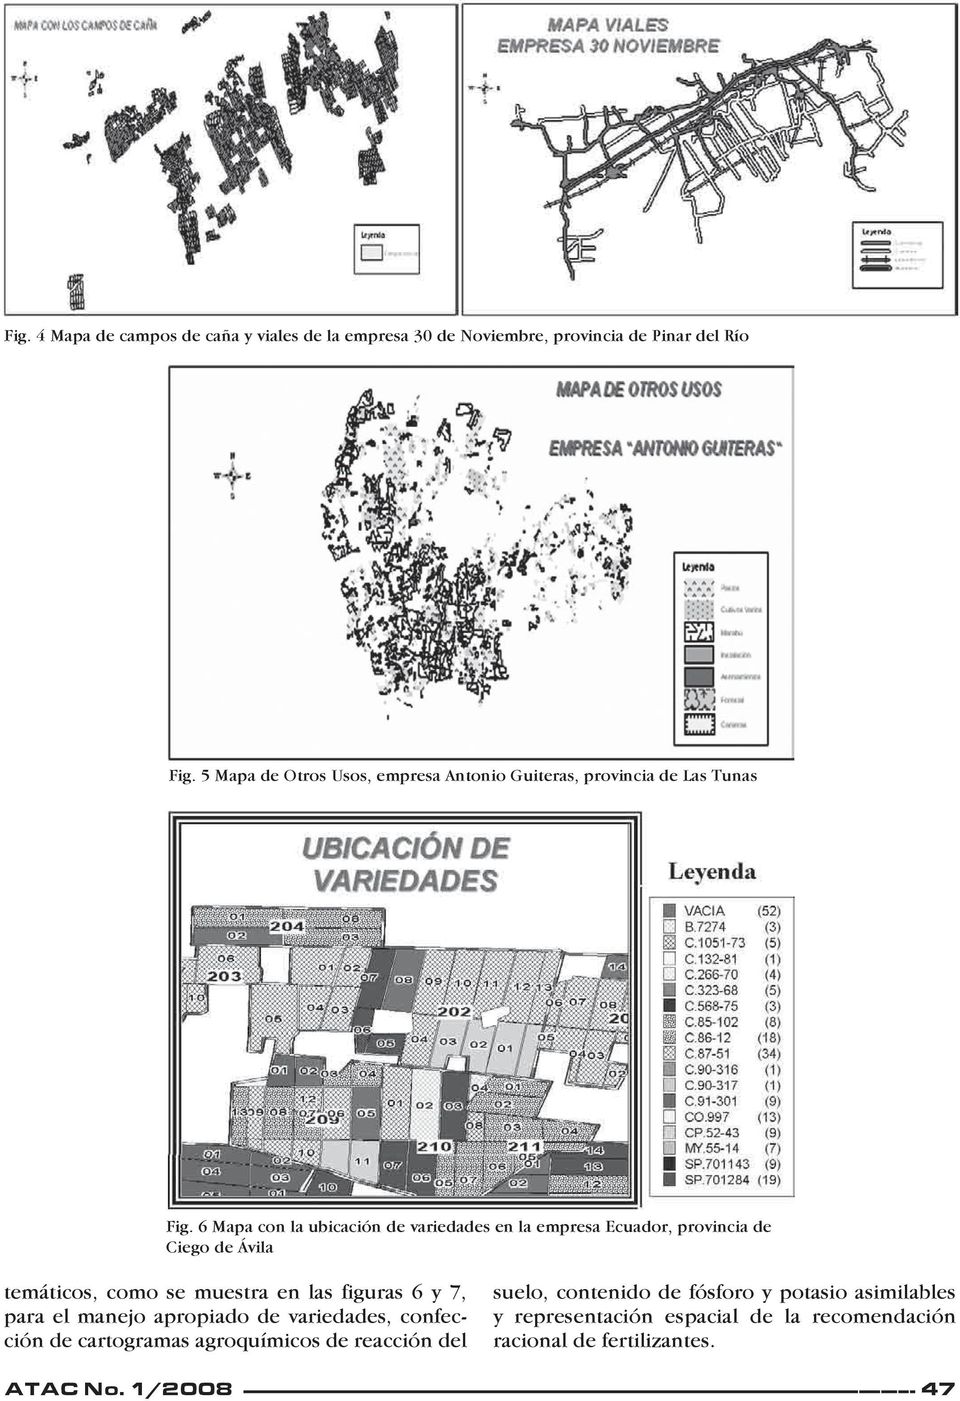 6 Mapa con la ubicación de variedades en la empresa Ecuador, provincia de Ciego de Ávila temáticos, como se muestra en las figuras 6